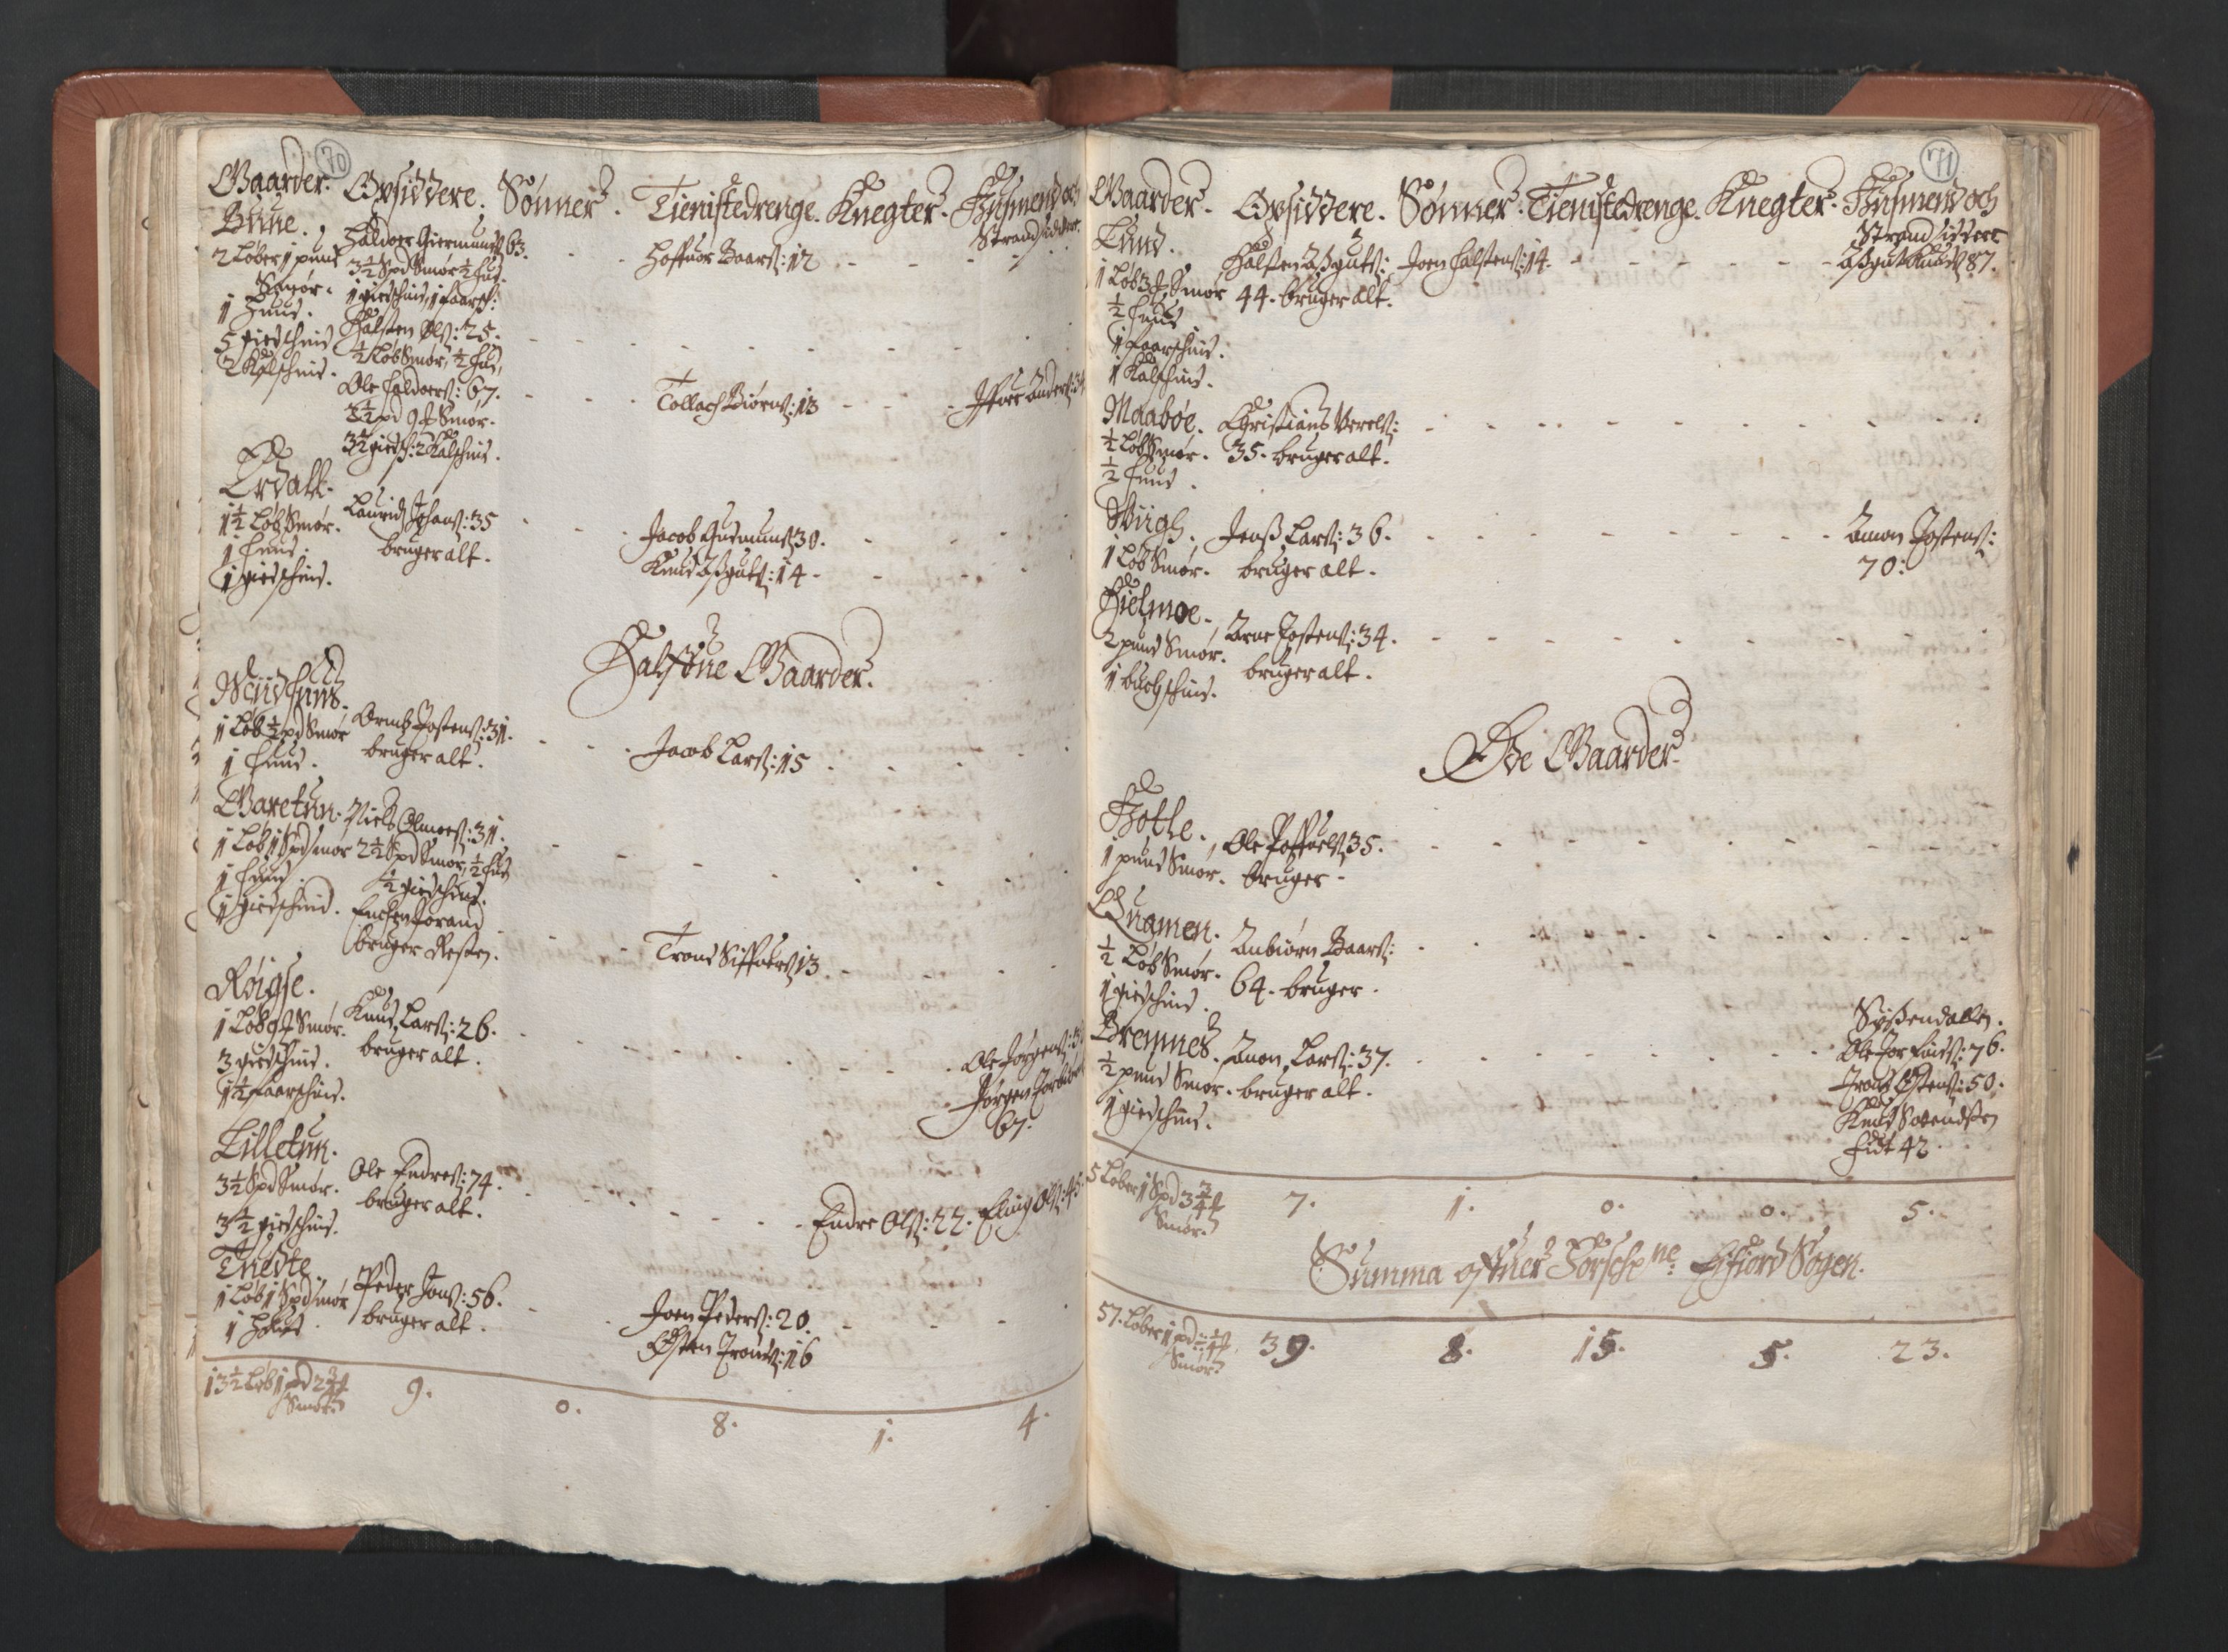 RA, Bailiff's Census 1664-1666, no. 14: Hardanger len, Ytre Sogn fogderi and Indre Sogn fogderi, 1664-1665, p. 70-71